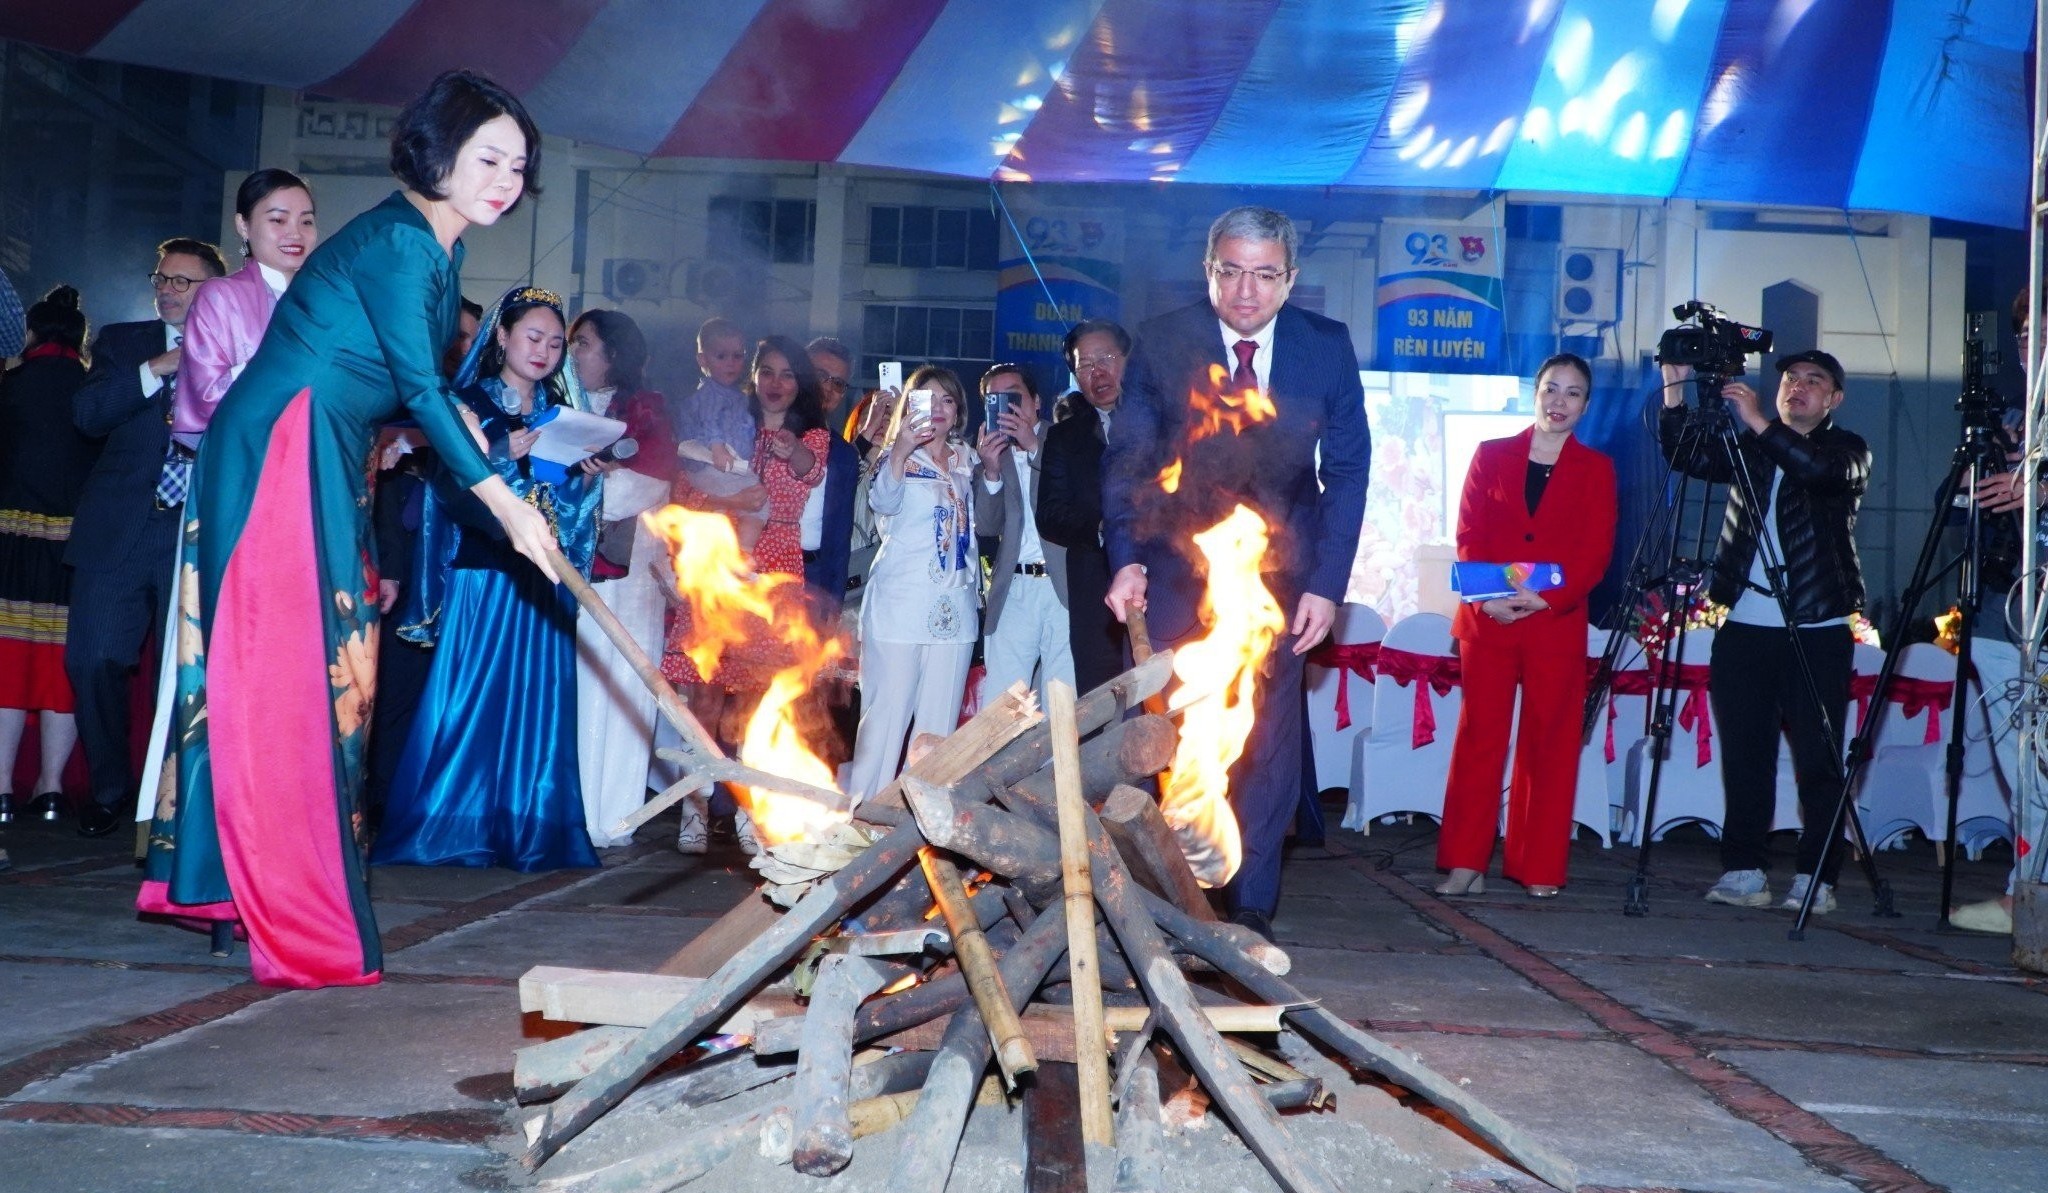 Khám phá văn hóa đặc sắc từ “Tết Novruz” của đất nước Azerbaijan